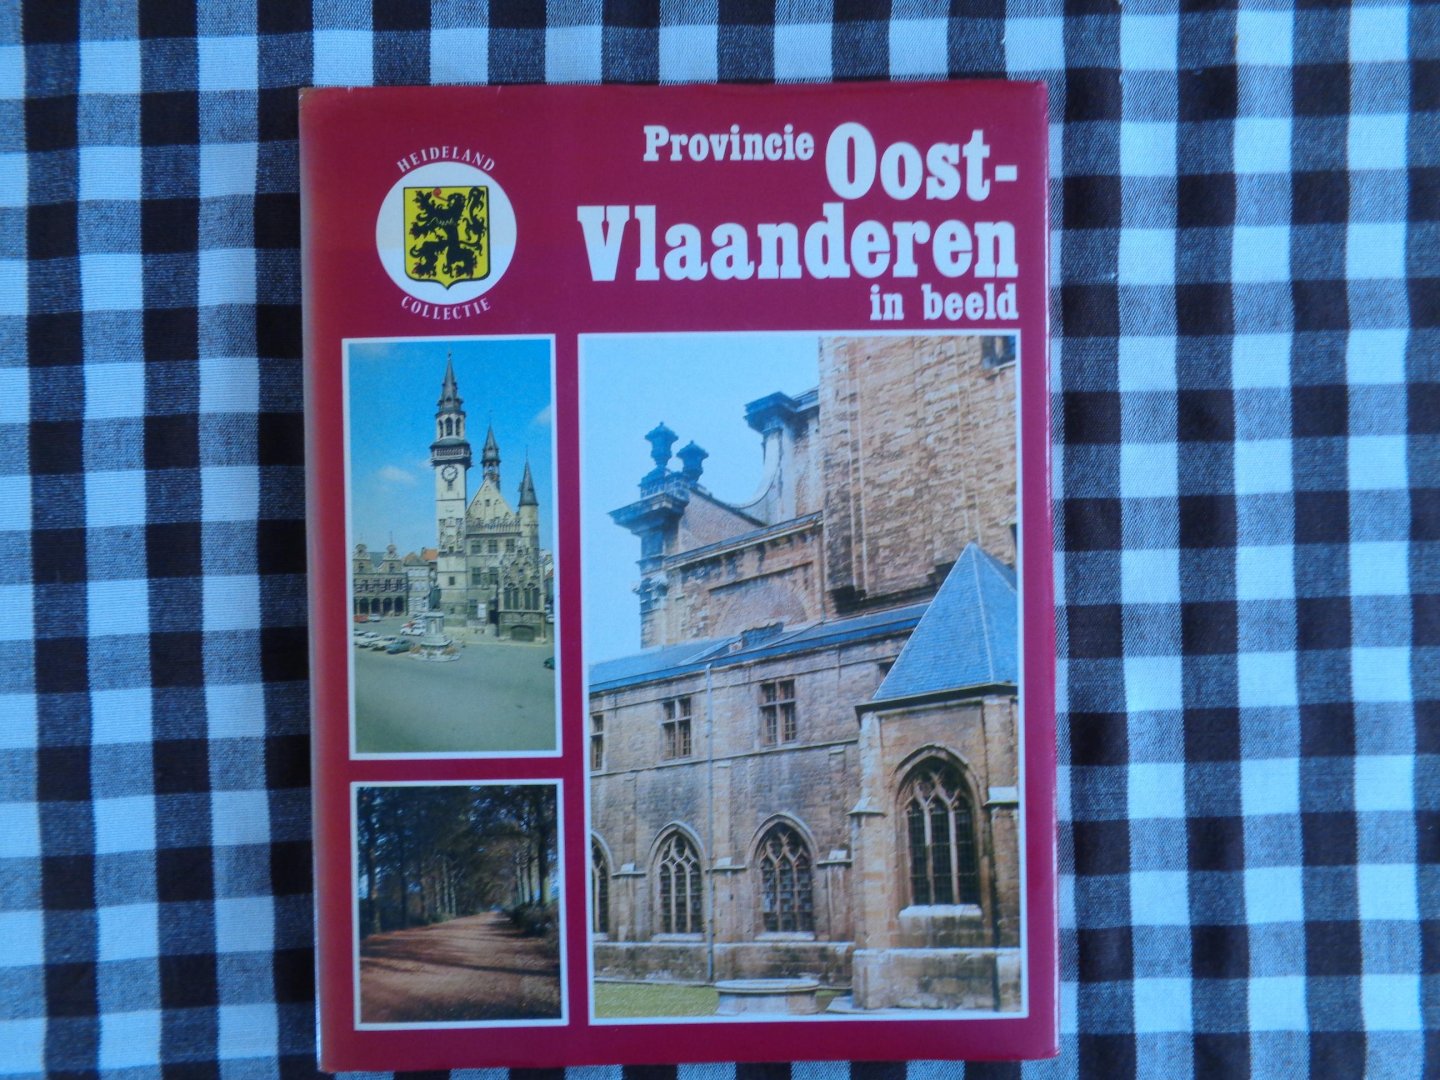 Remoortere - Provincie oost-vlaanderen in beeld / druk 1